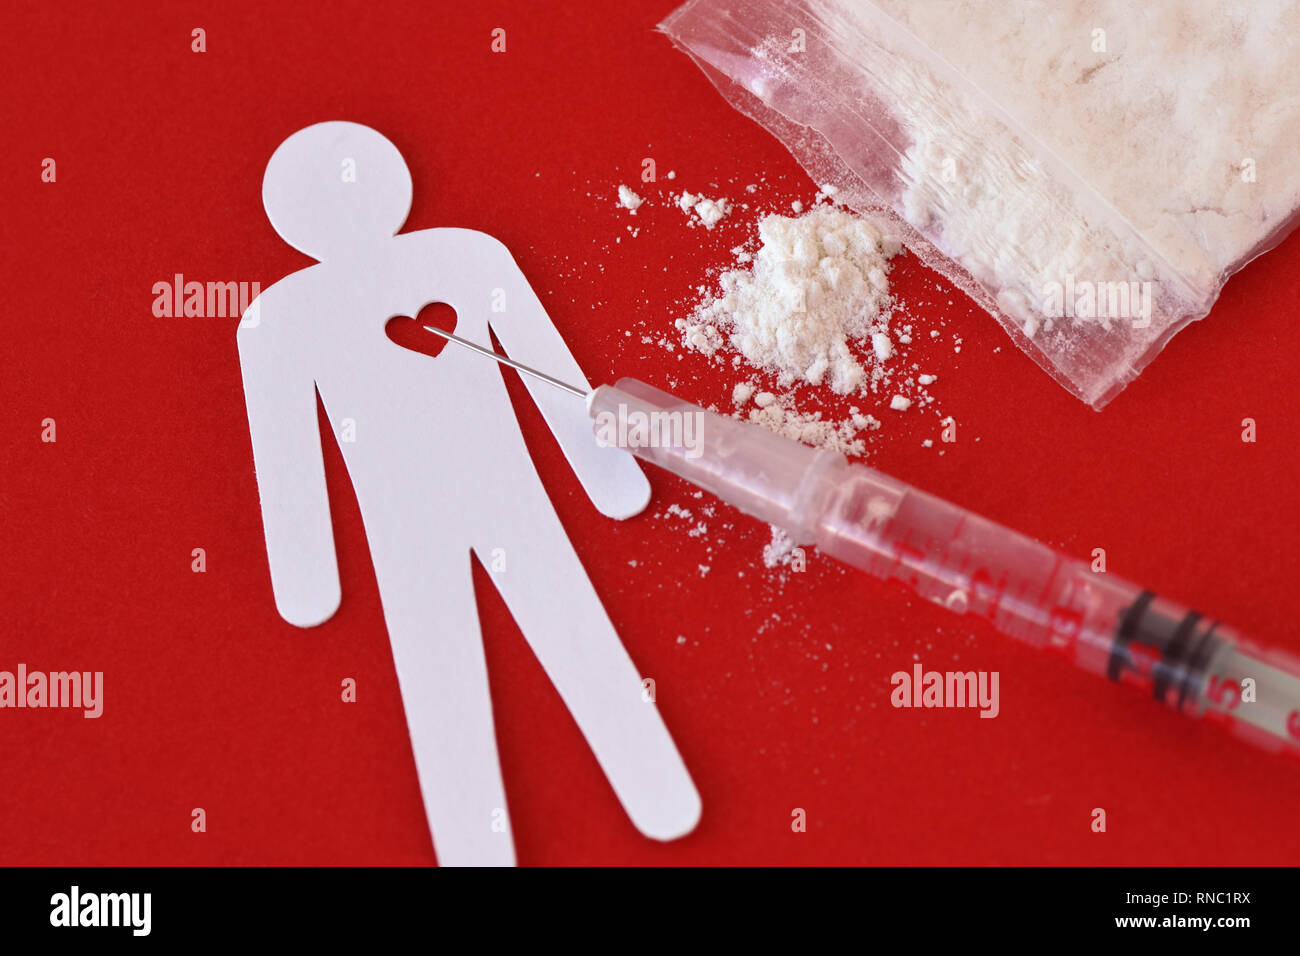 Uomo di carta con il cuore, la siringa e la bustina di droga su sfondo rosso - Nozione di tossicodipendenza. Foto Stock